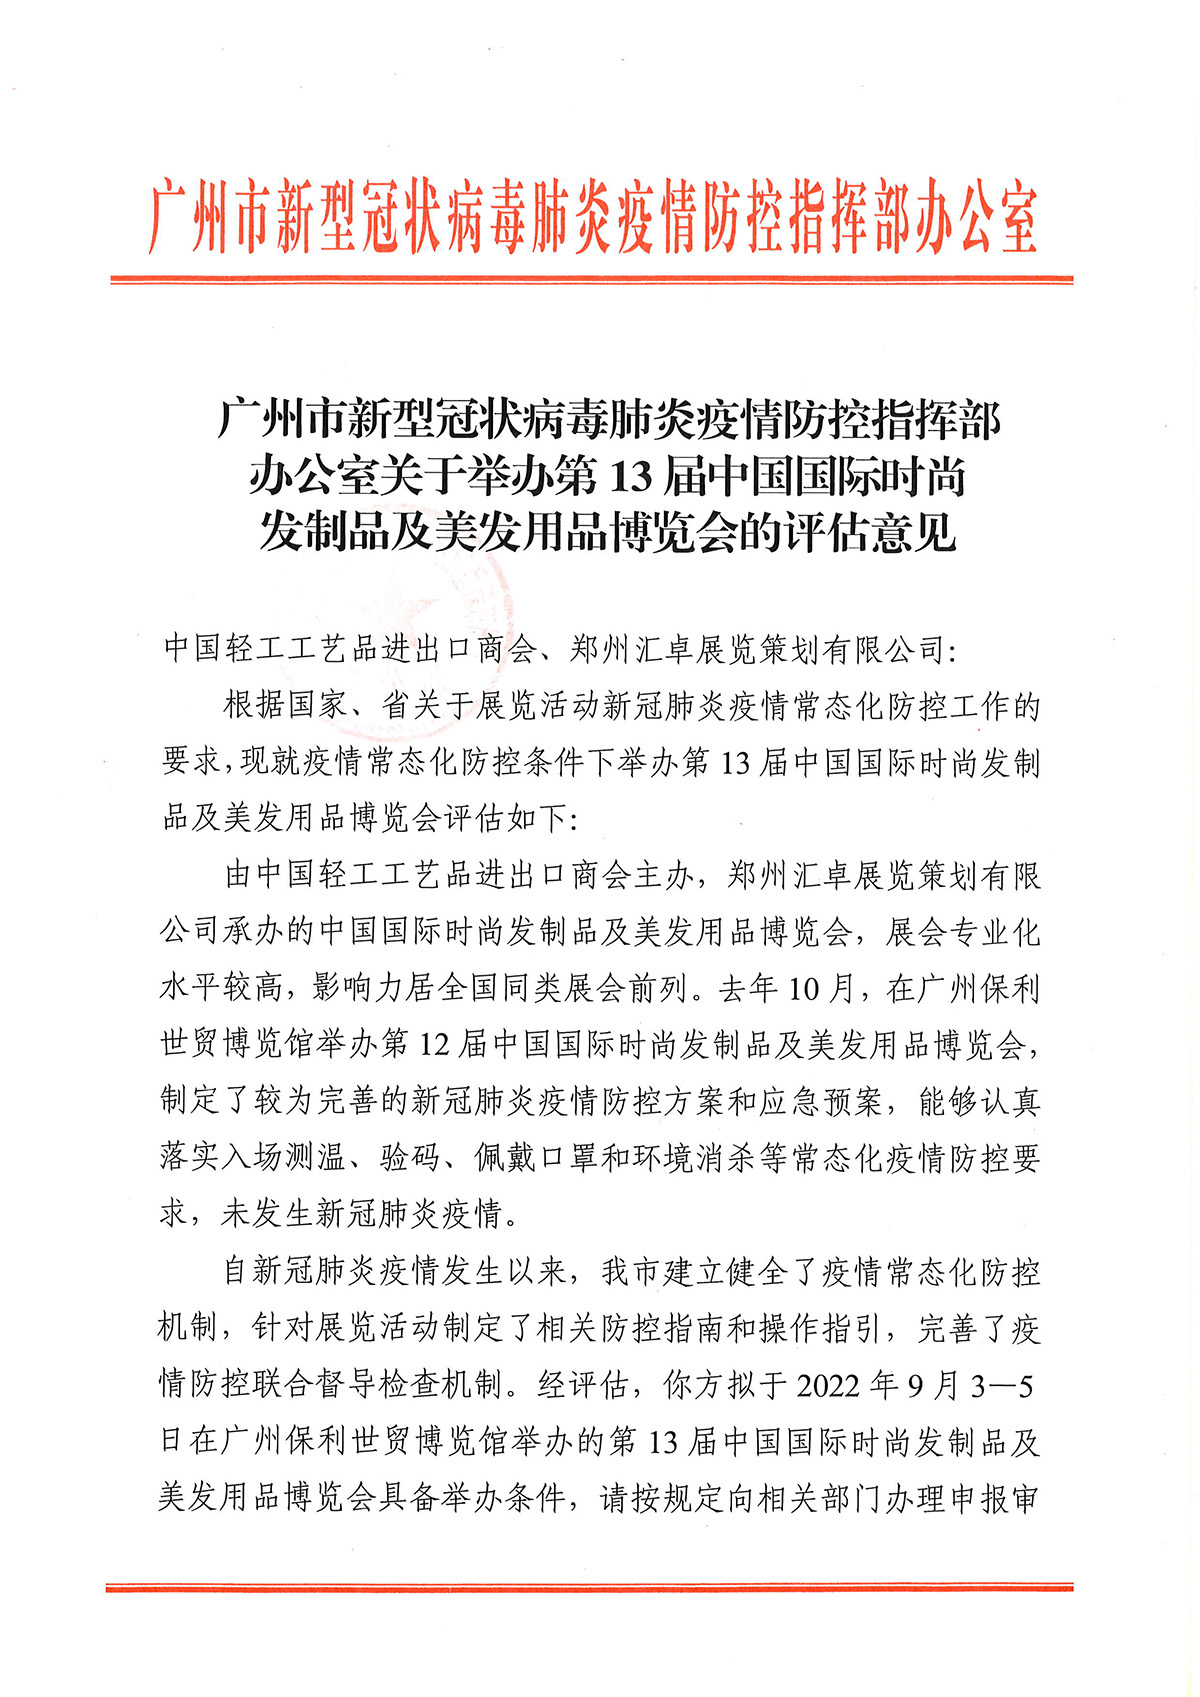 广州市新型冠状病毒肺炎疫情防控指挥部办公室  关于举办第13届中国国际时尚发制品及美发用品博览会的评估意见